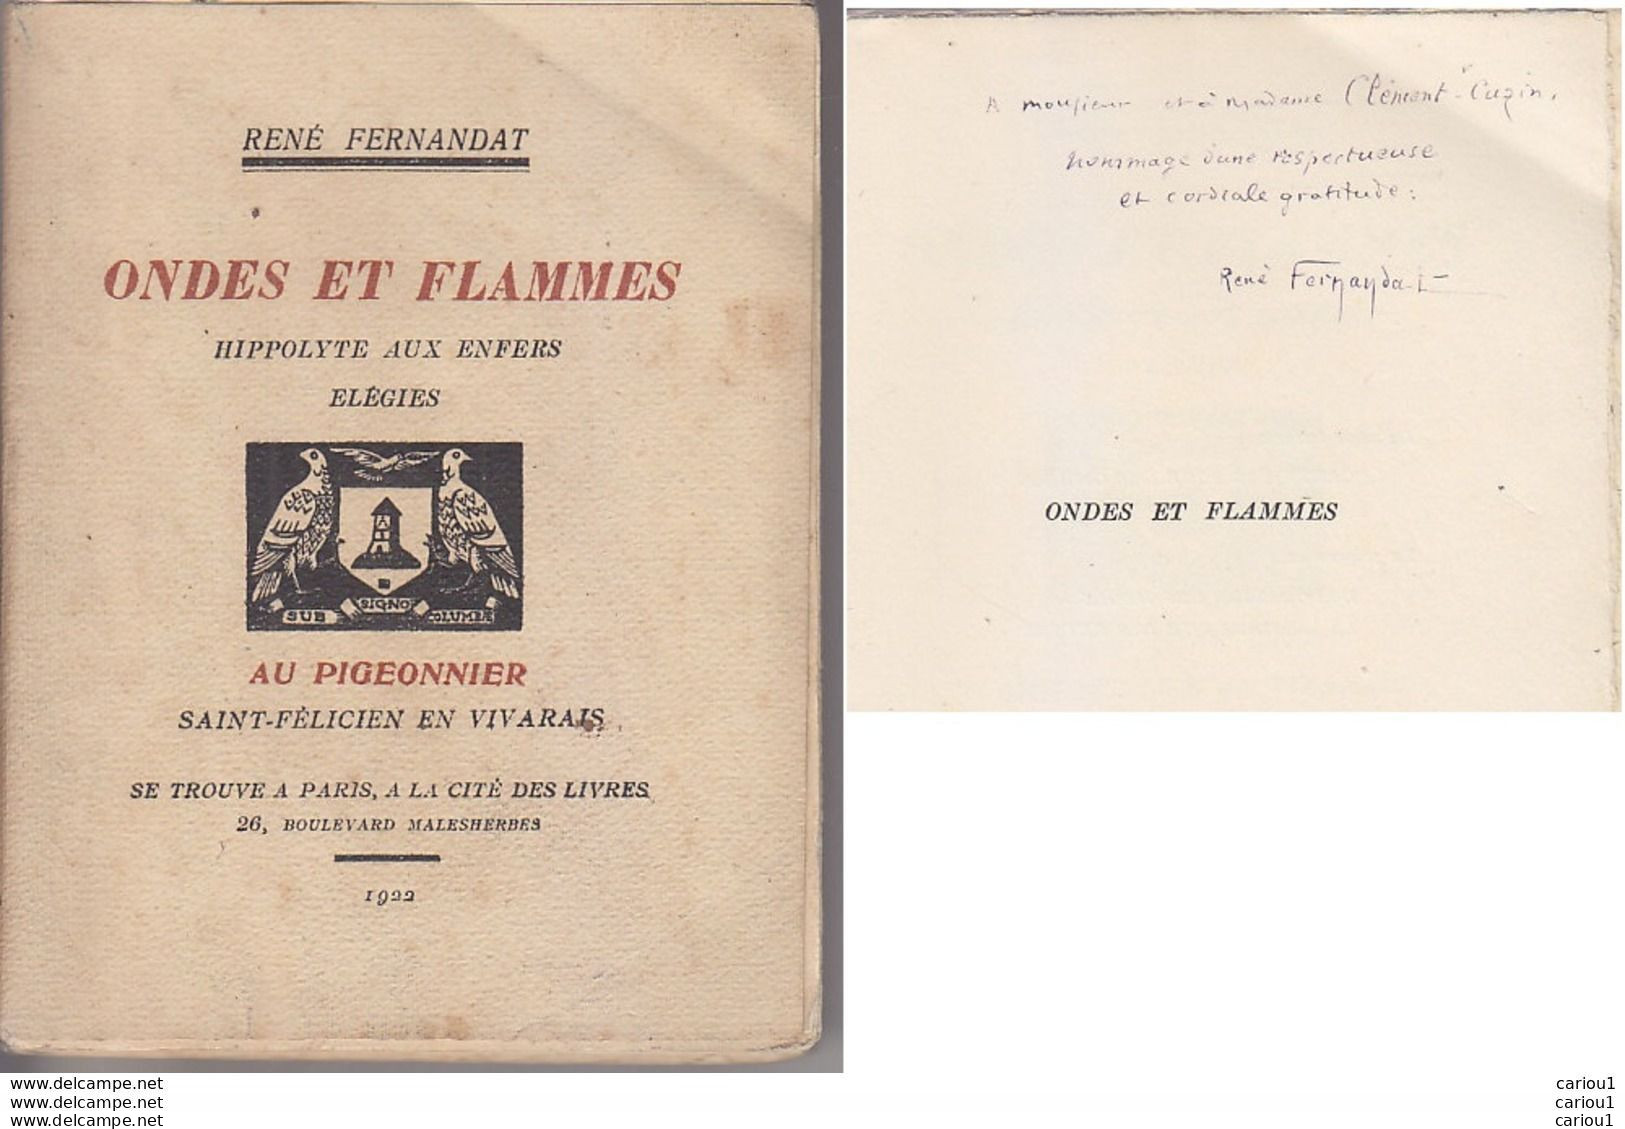 C1 Rene FERNANDAT Ondes Et Flammes 1922 DEDICACE ENVOI Forot PIGEONNIER Vivarais PORT INCLUS FRANCE - Libri Con Dedica